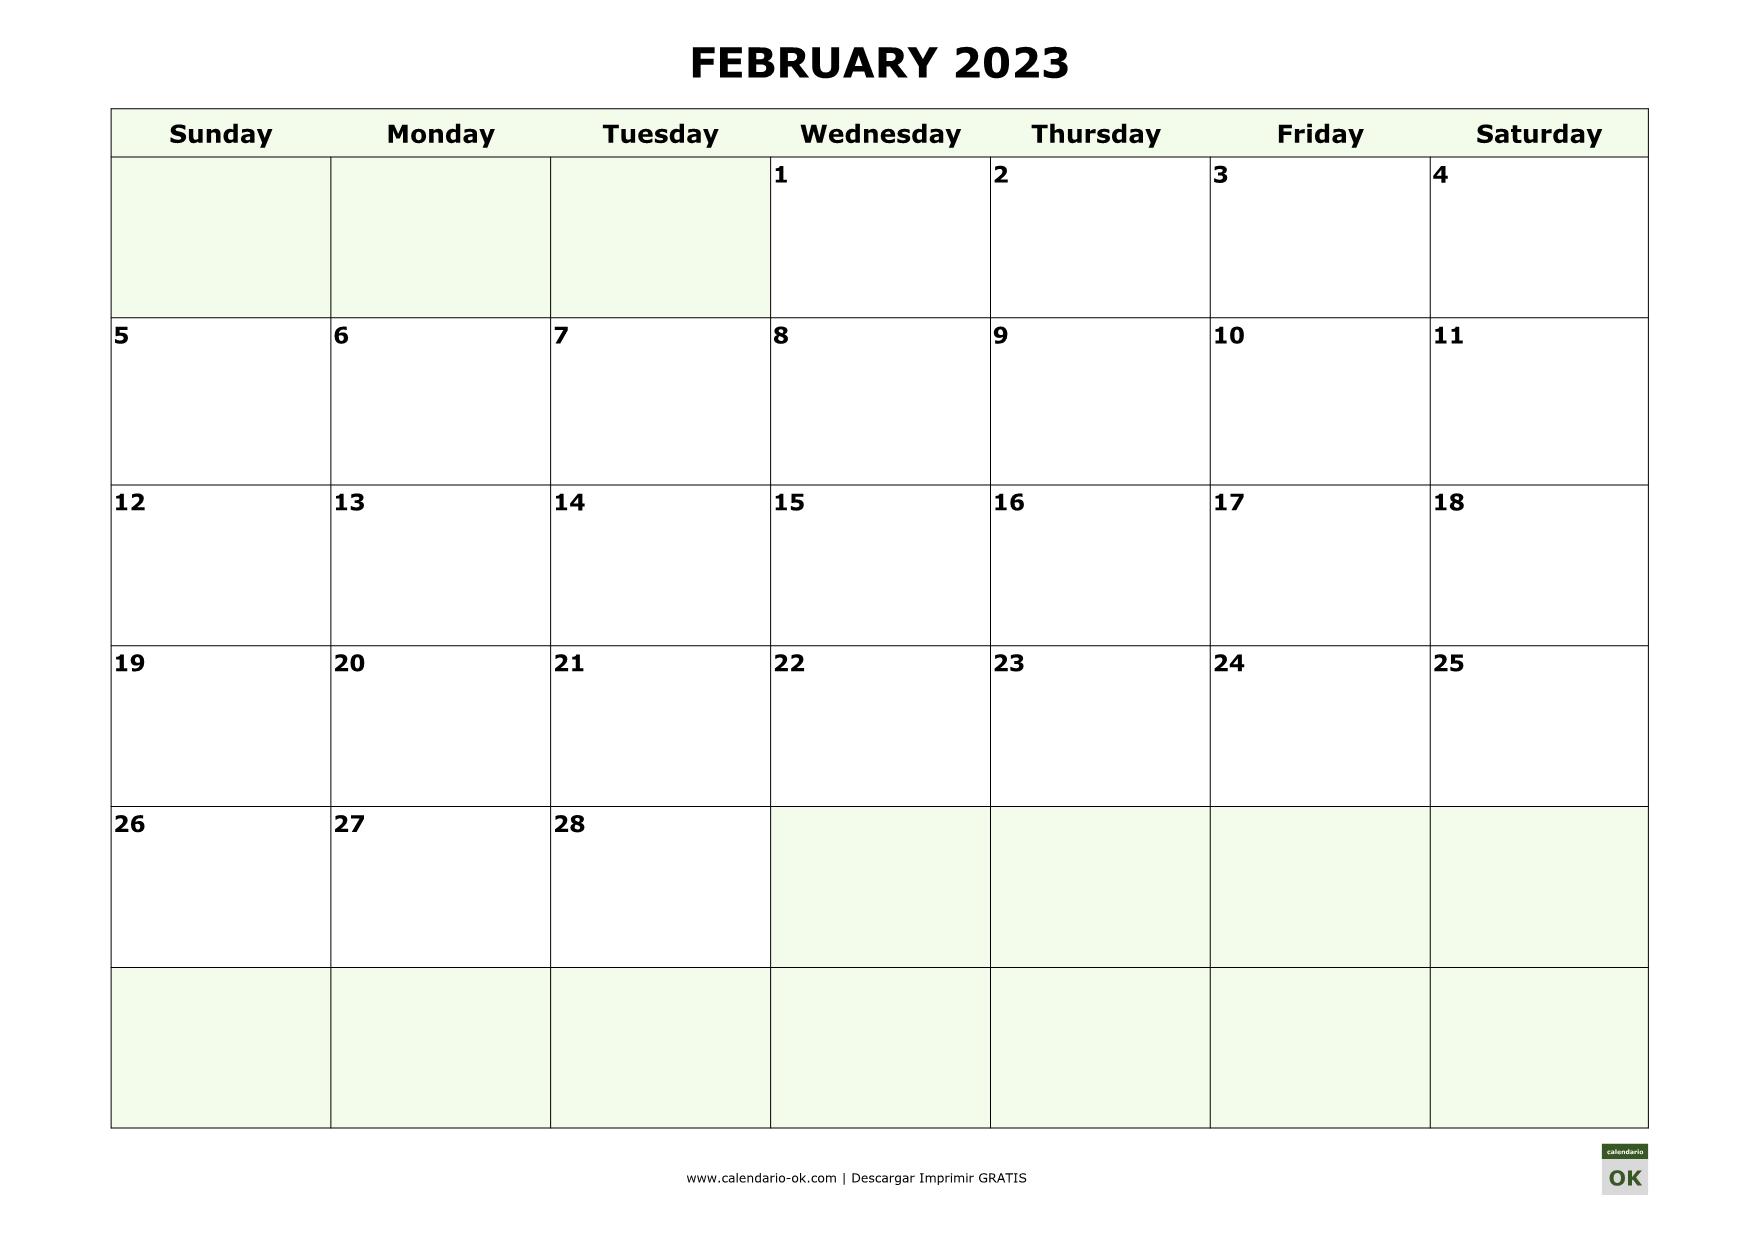 FEBRERO 2023 calendario en INGLES empieza por DOMINGO